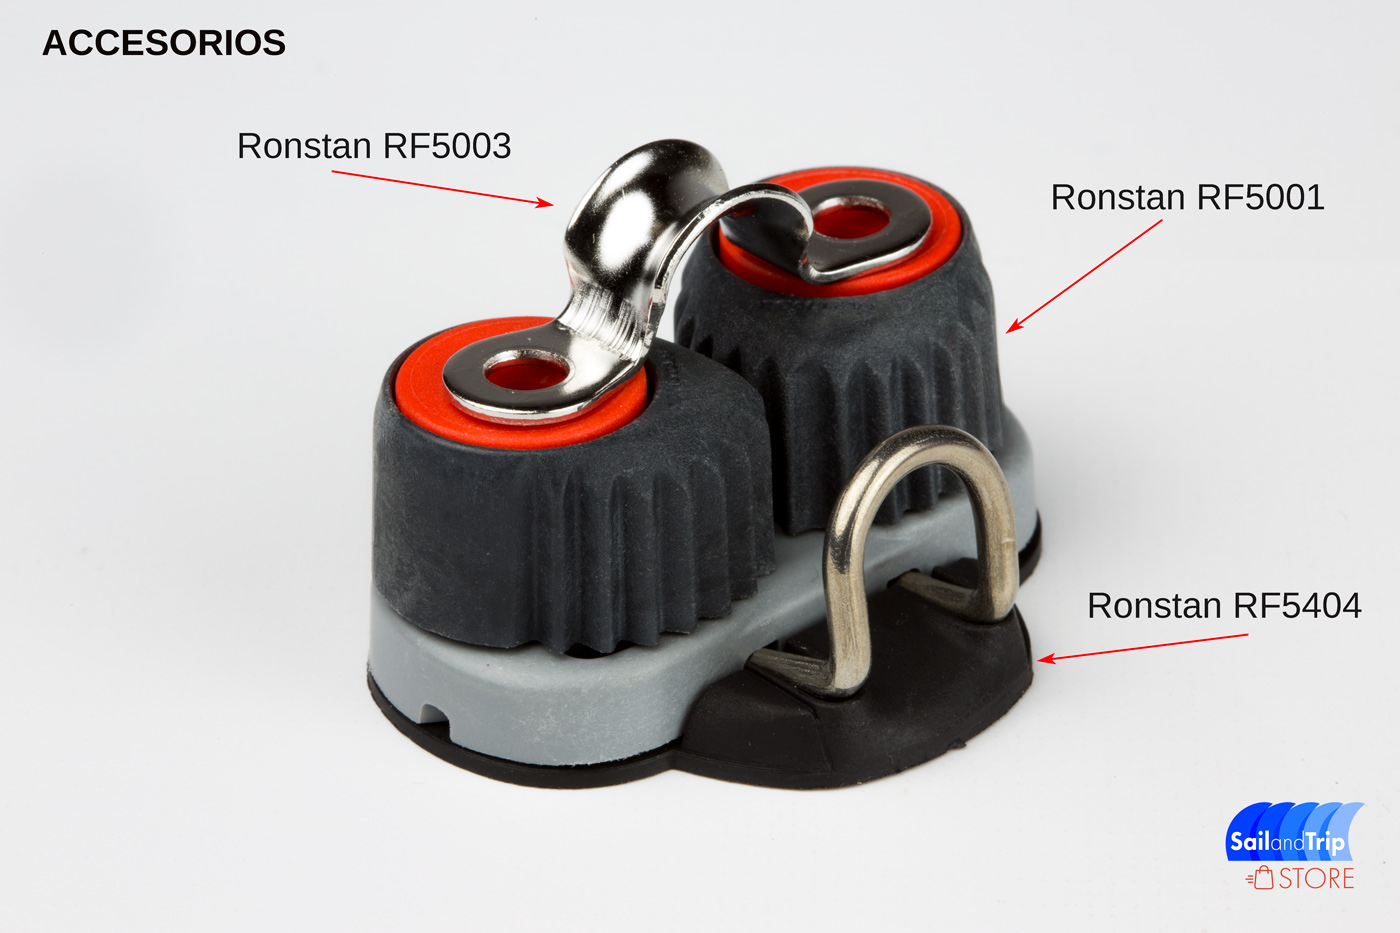 Ronstan RF5001 accesorios